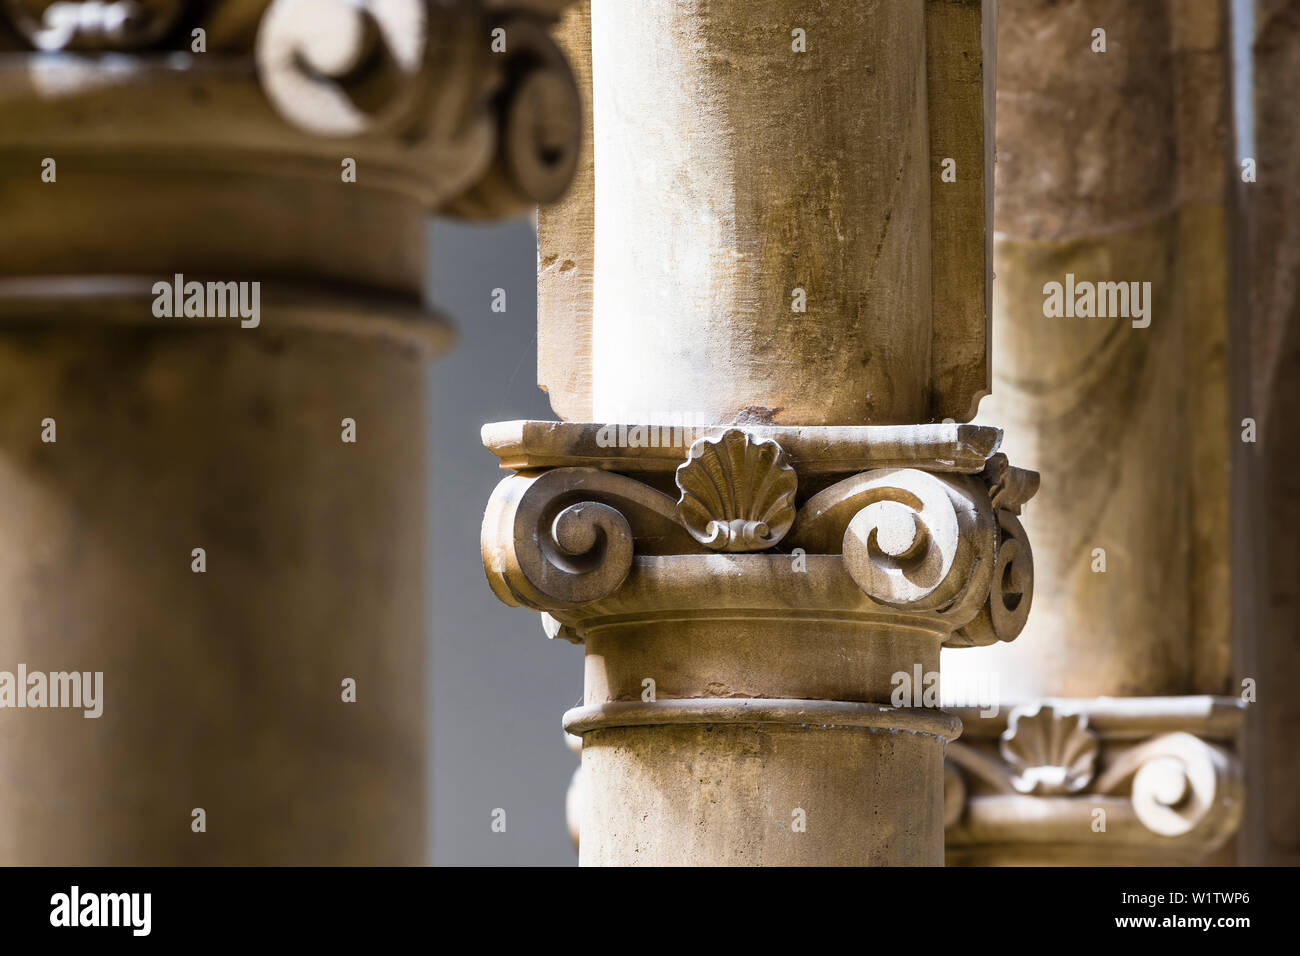 Columns in a manor house, Old Town, Palma de Mallorca, Mallorca, Spain Stock Photo